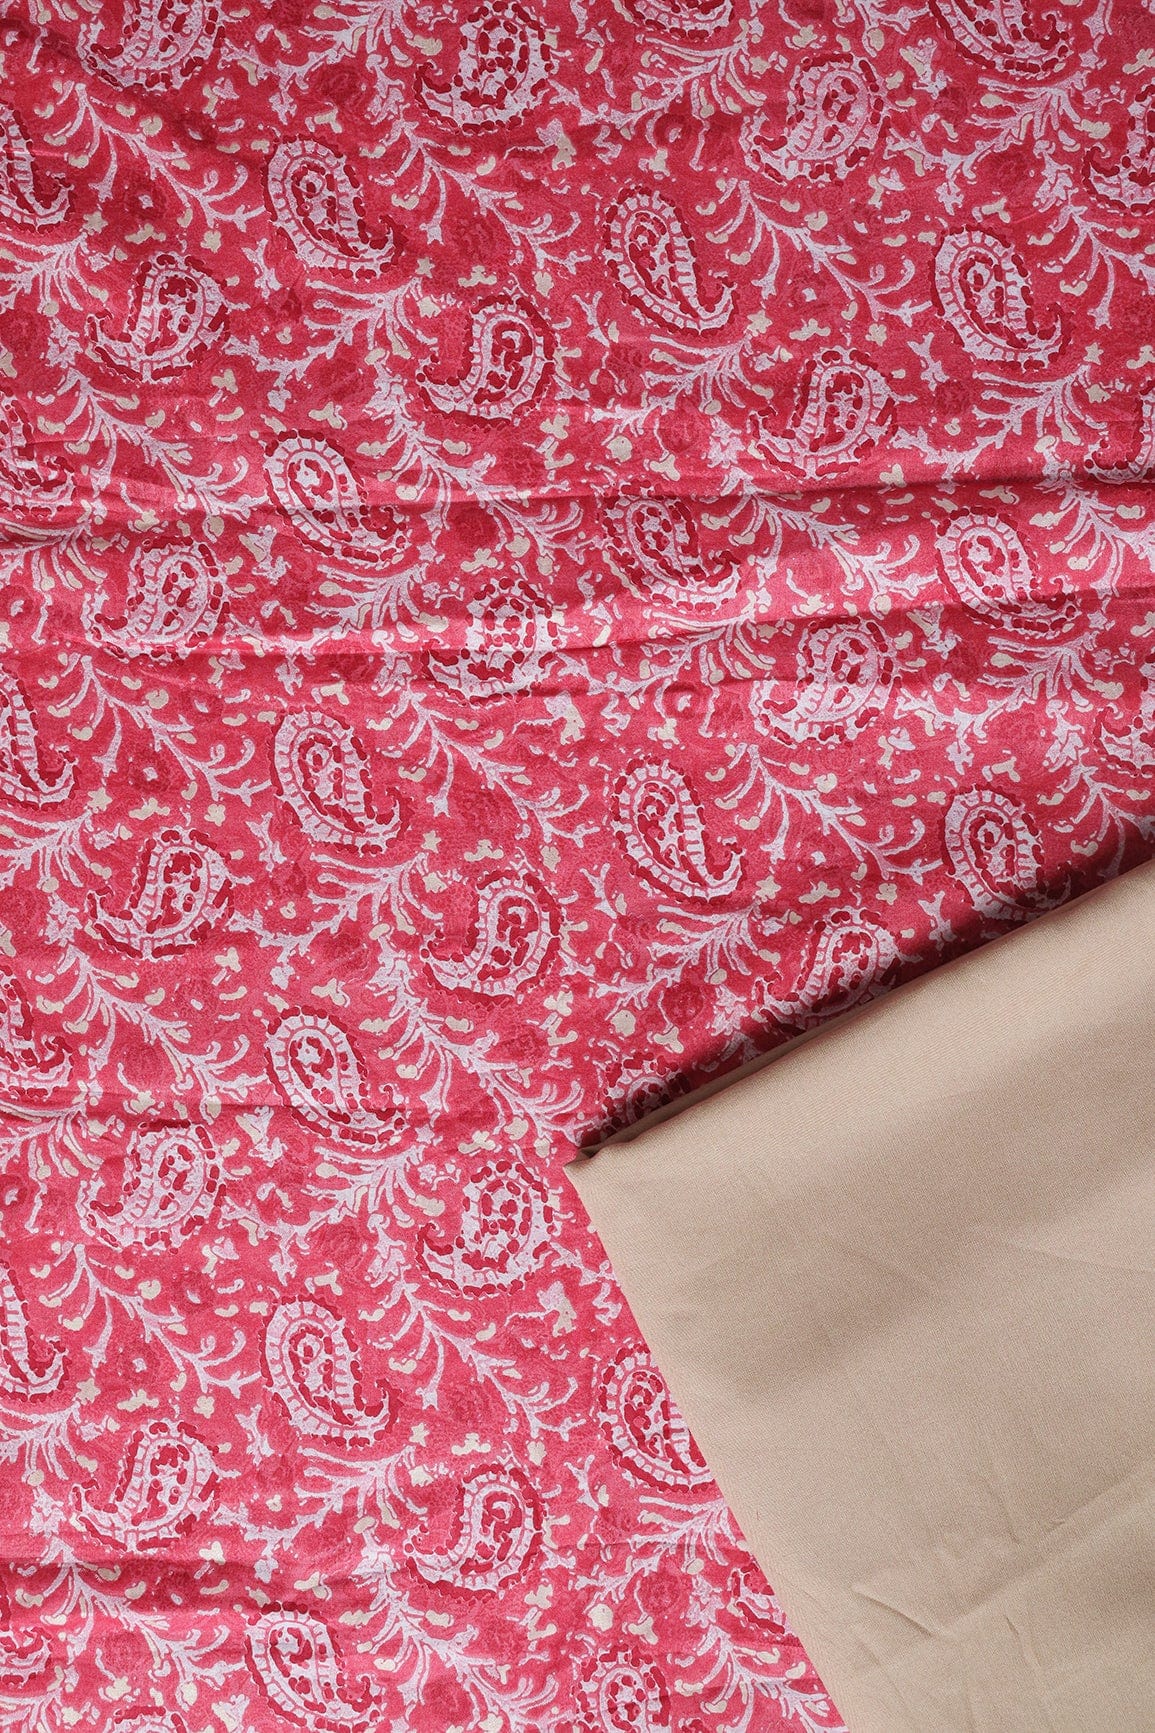 doeraa SUIT SETS Pink And Beige Pure Mul Cotton Unstitched Suit Set (2 Piece)